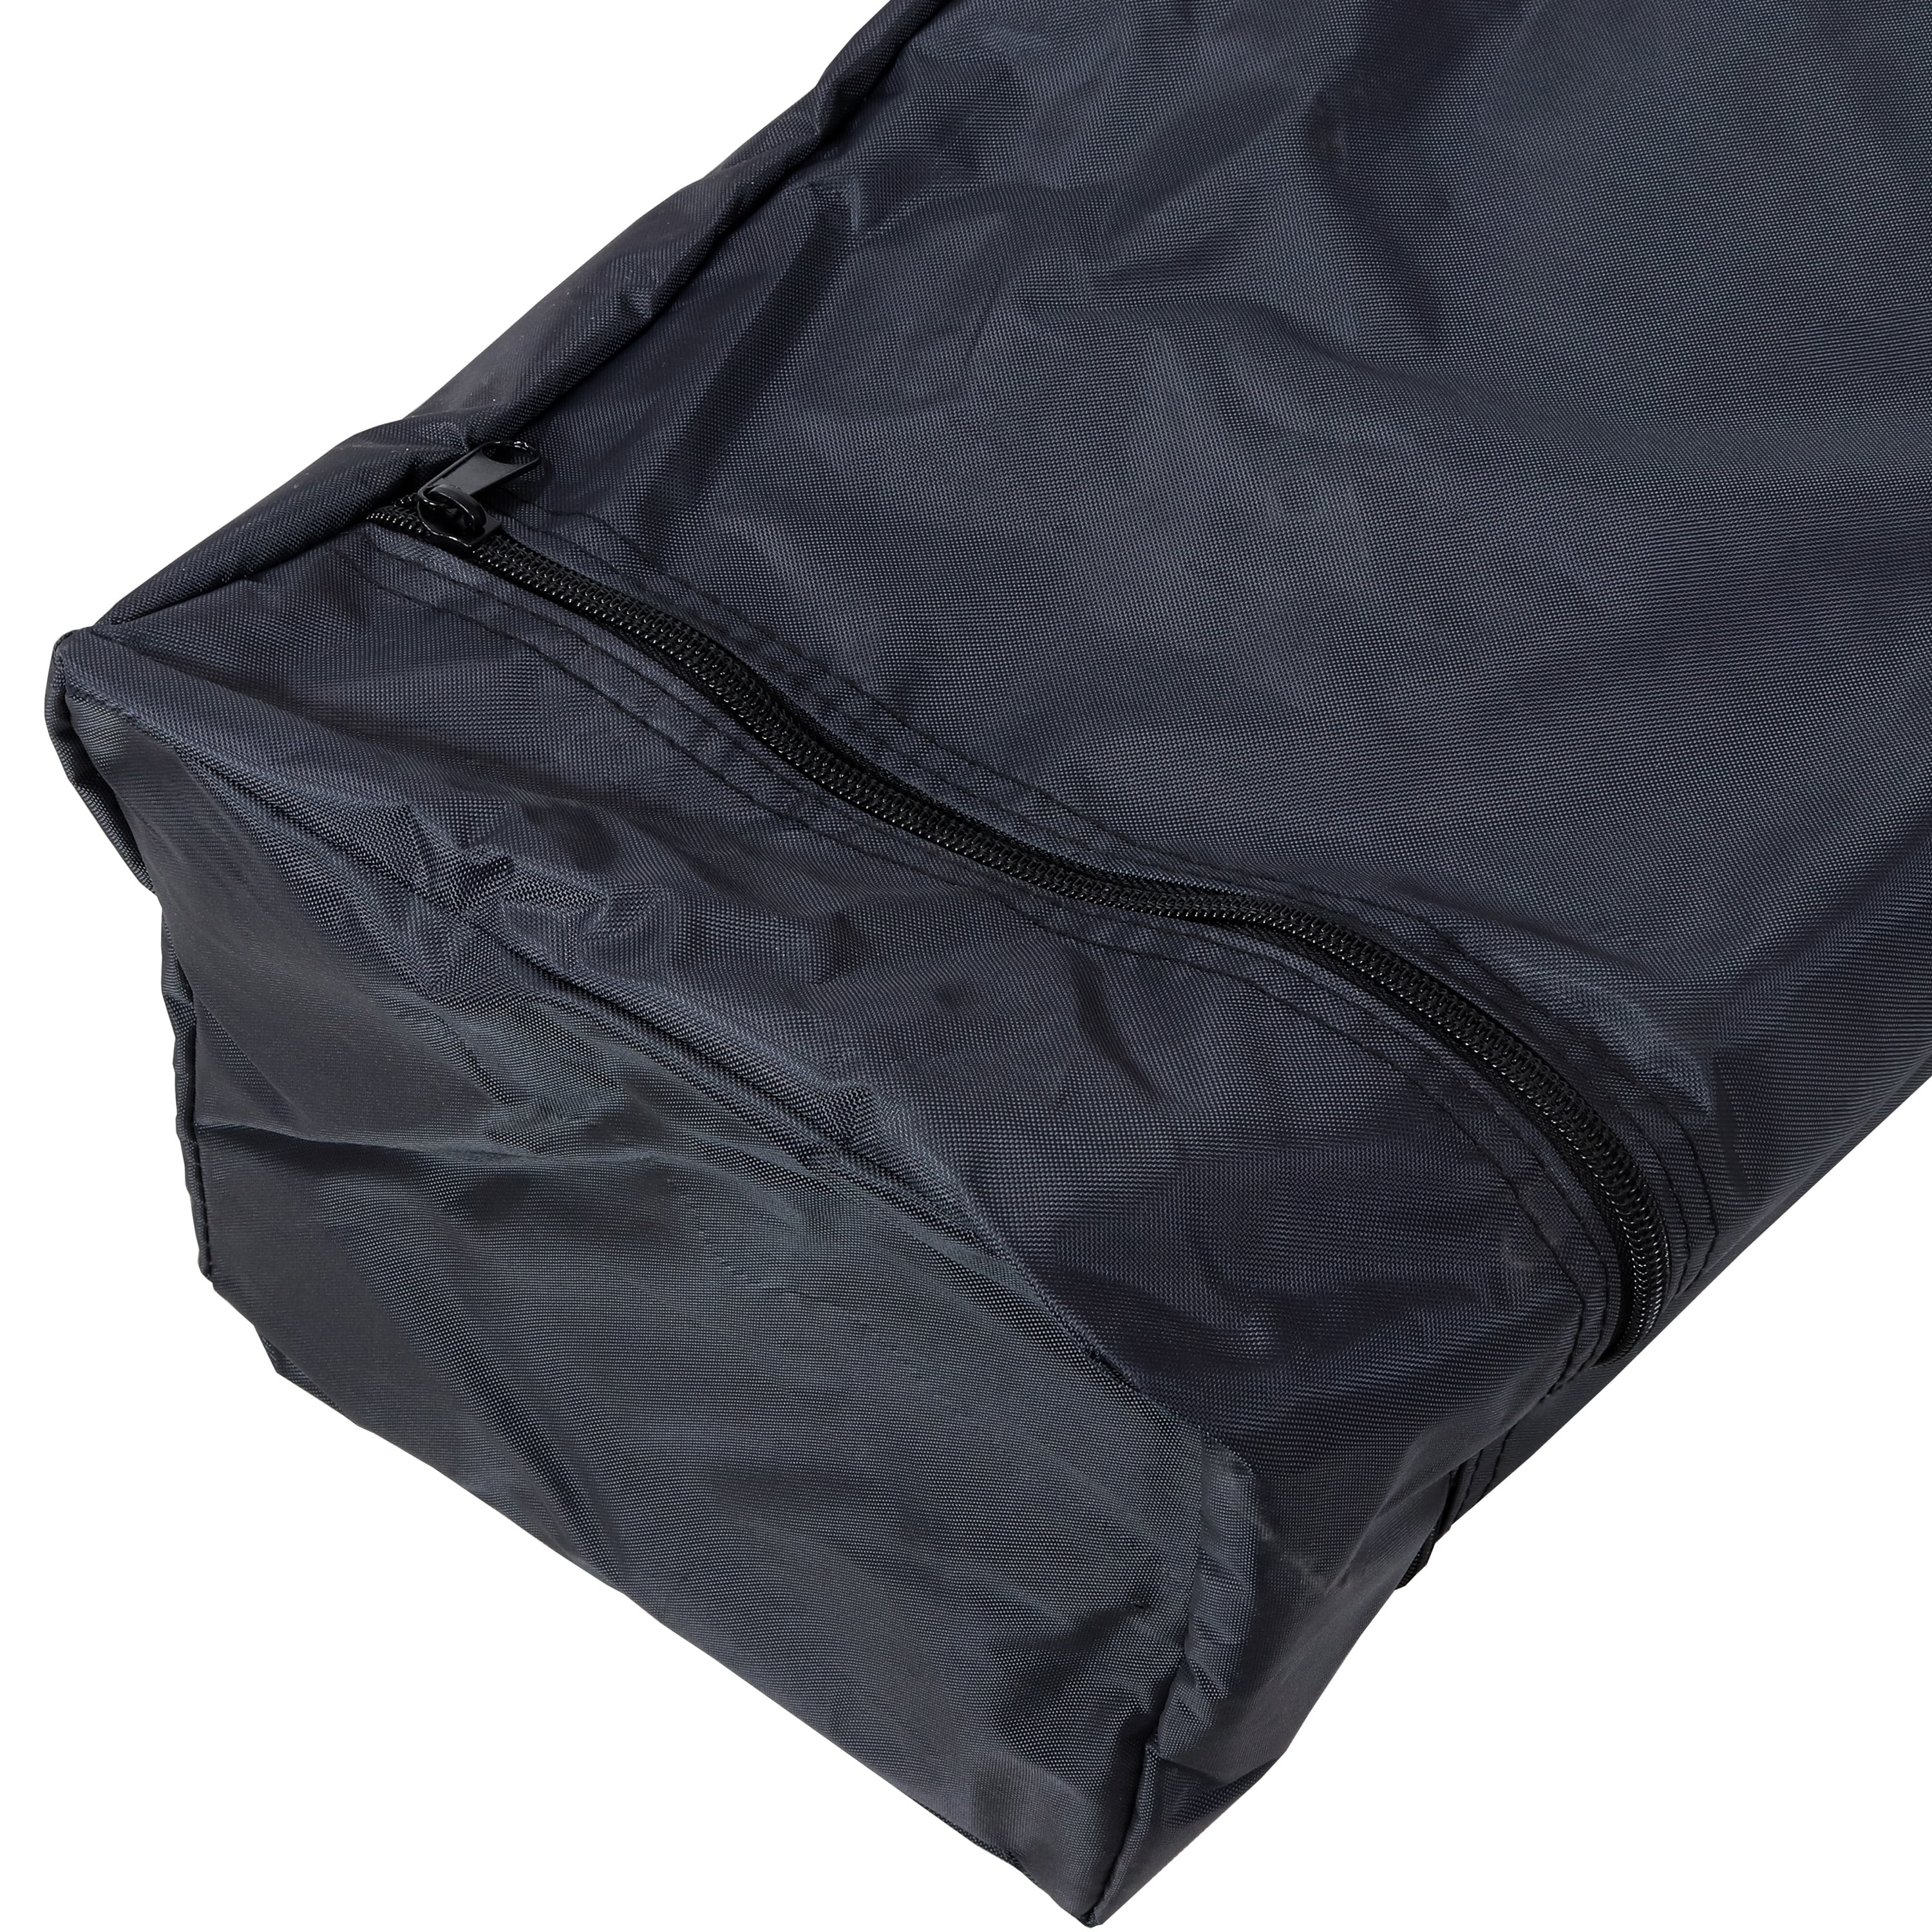 Sunnydaze Standard 12x12 Foot Pop-Up Canopy Carrying Bag - 420D 